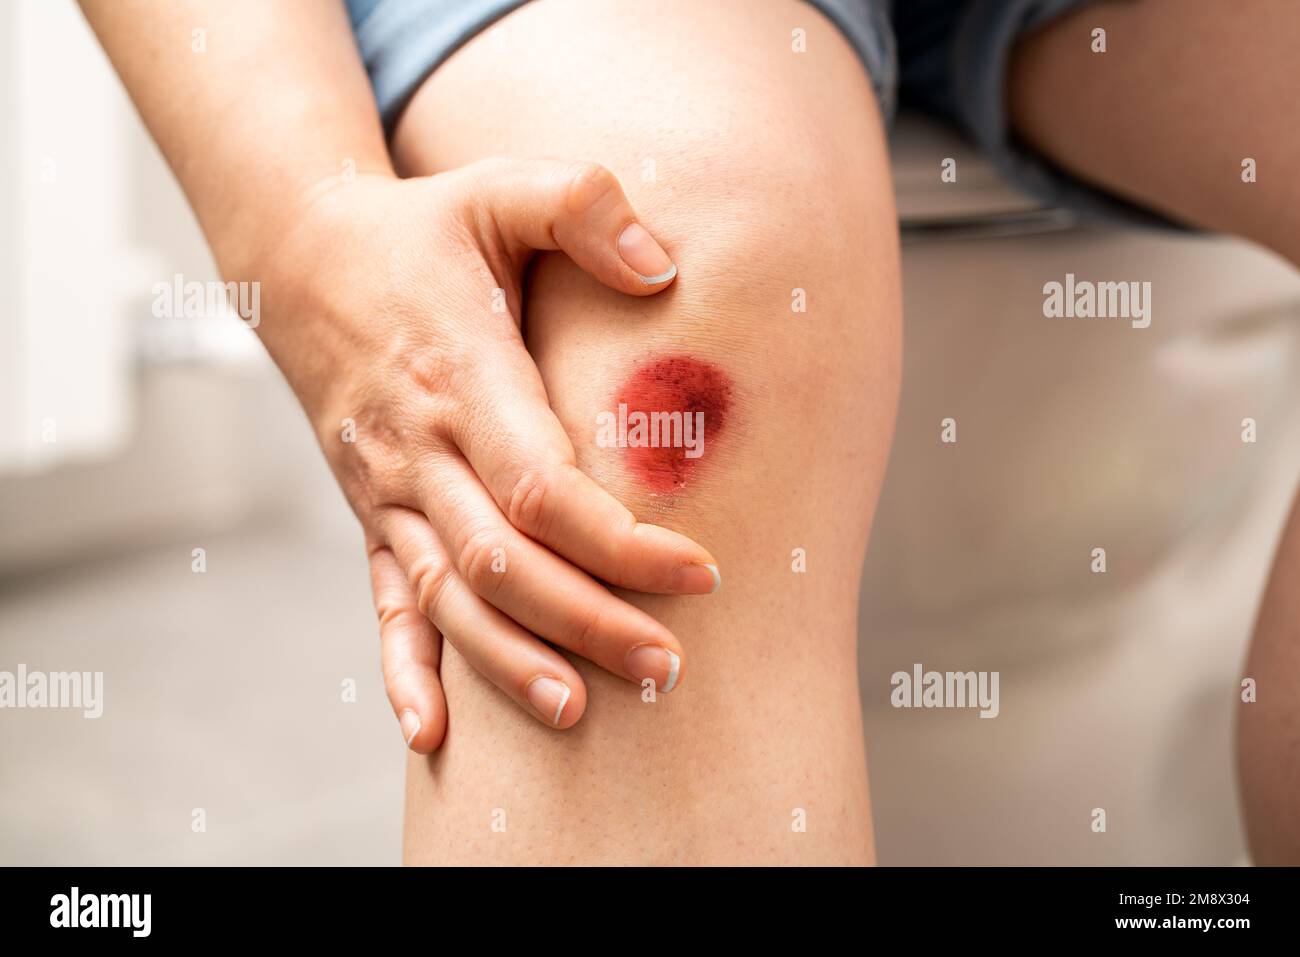 Nahaufnahme der Beine einer Frau, die mit einer blutigen Wunde auf der Toilette sitzt Stockfoto